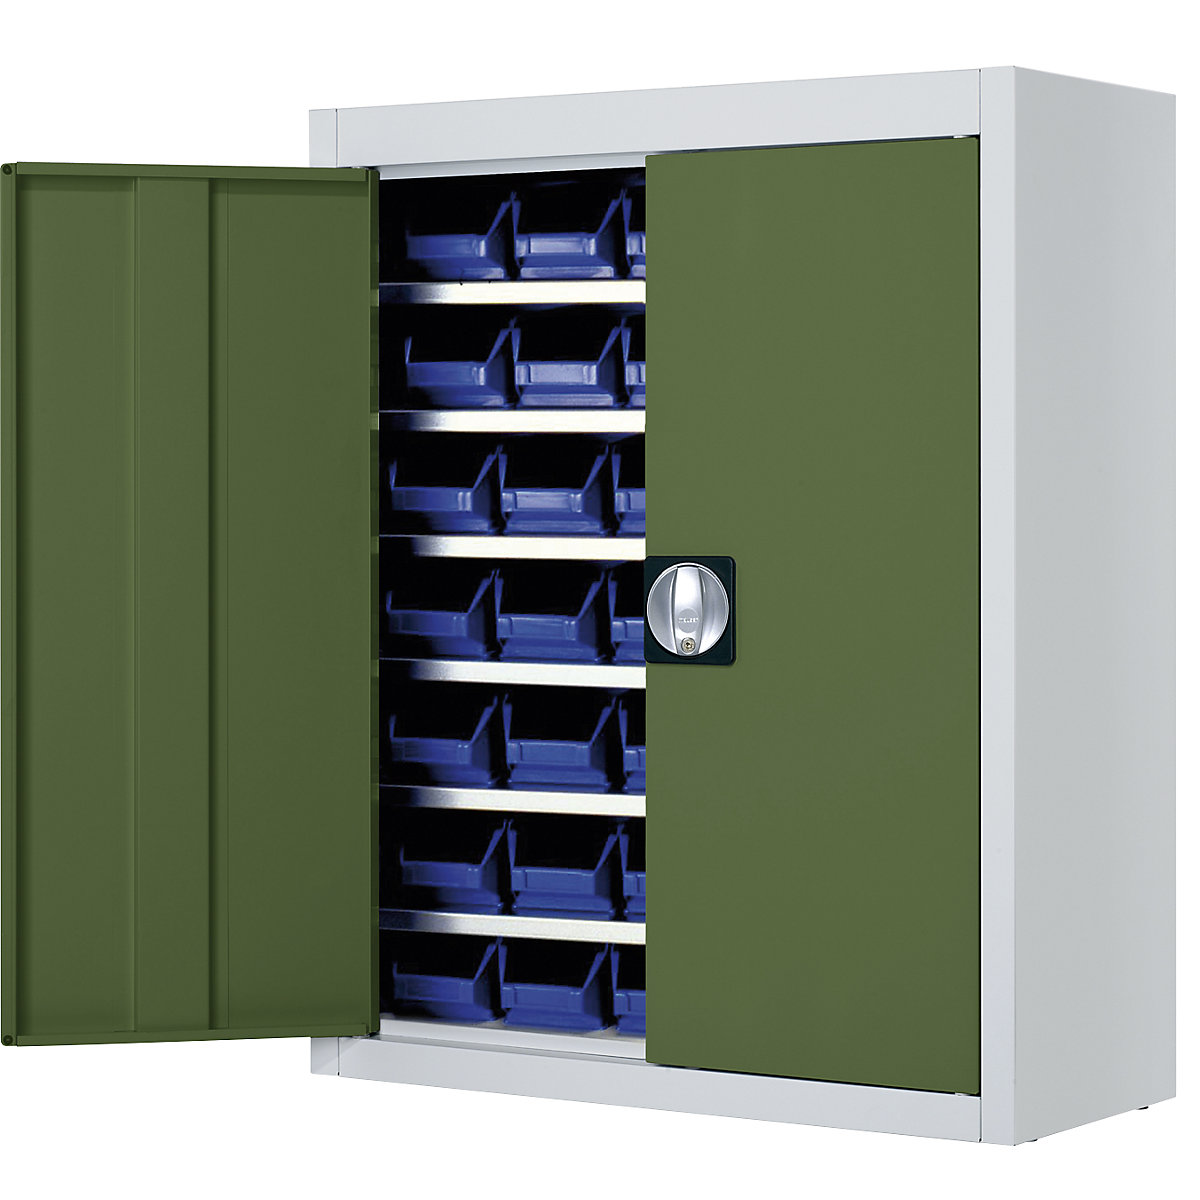 Skladová skříň s přepravkami s viditelným obsahem – mauser, v x š x h 820 x 680 x 280 mm, dvoubarevné, korpus šedý, dveře zelené, 42 přepravek, od 3 ks-5